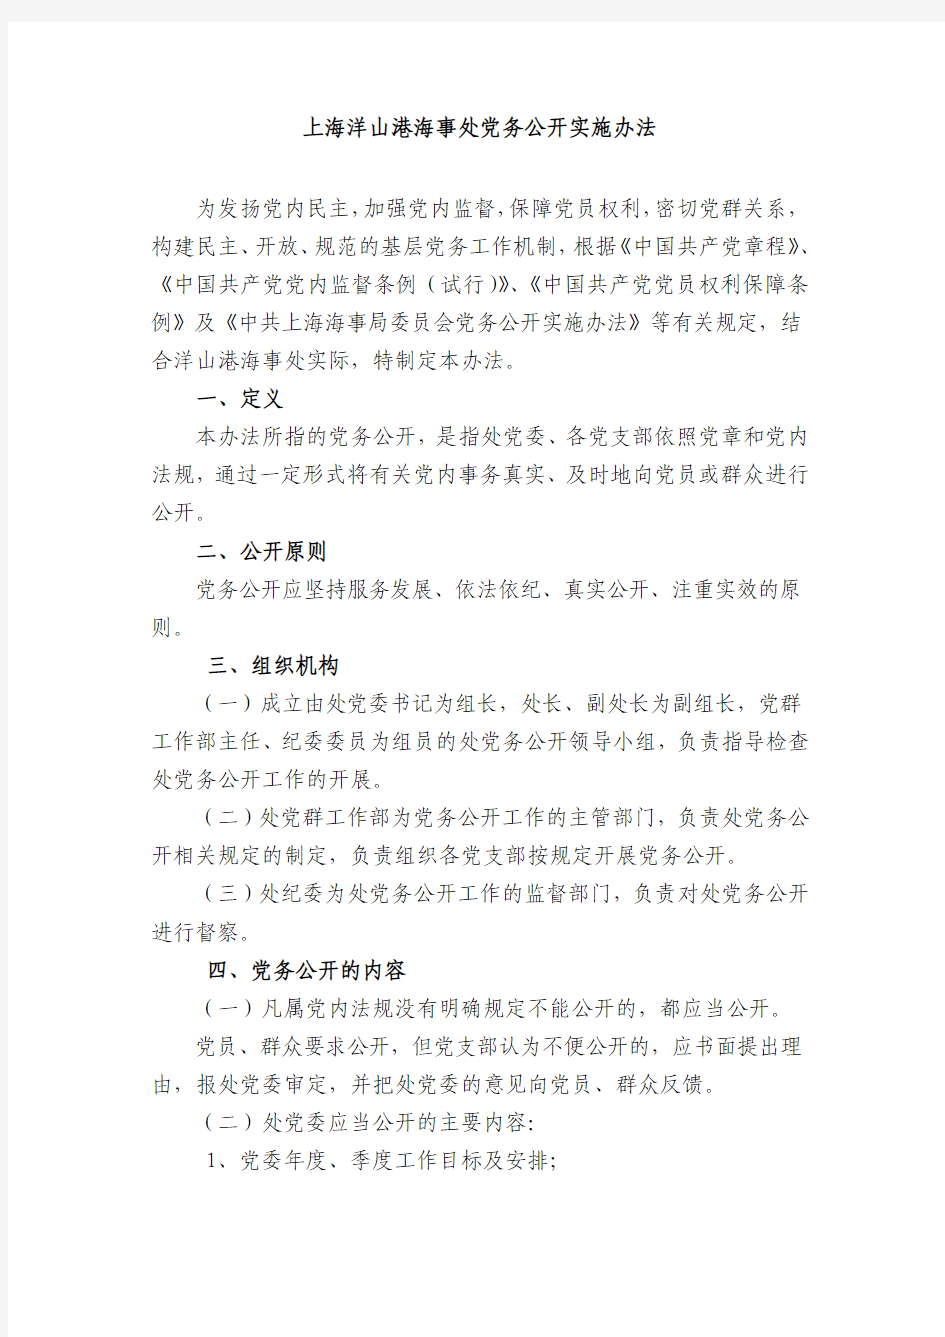 上海洋山港海事处党务公开实施办法